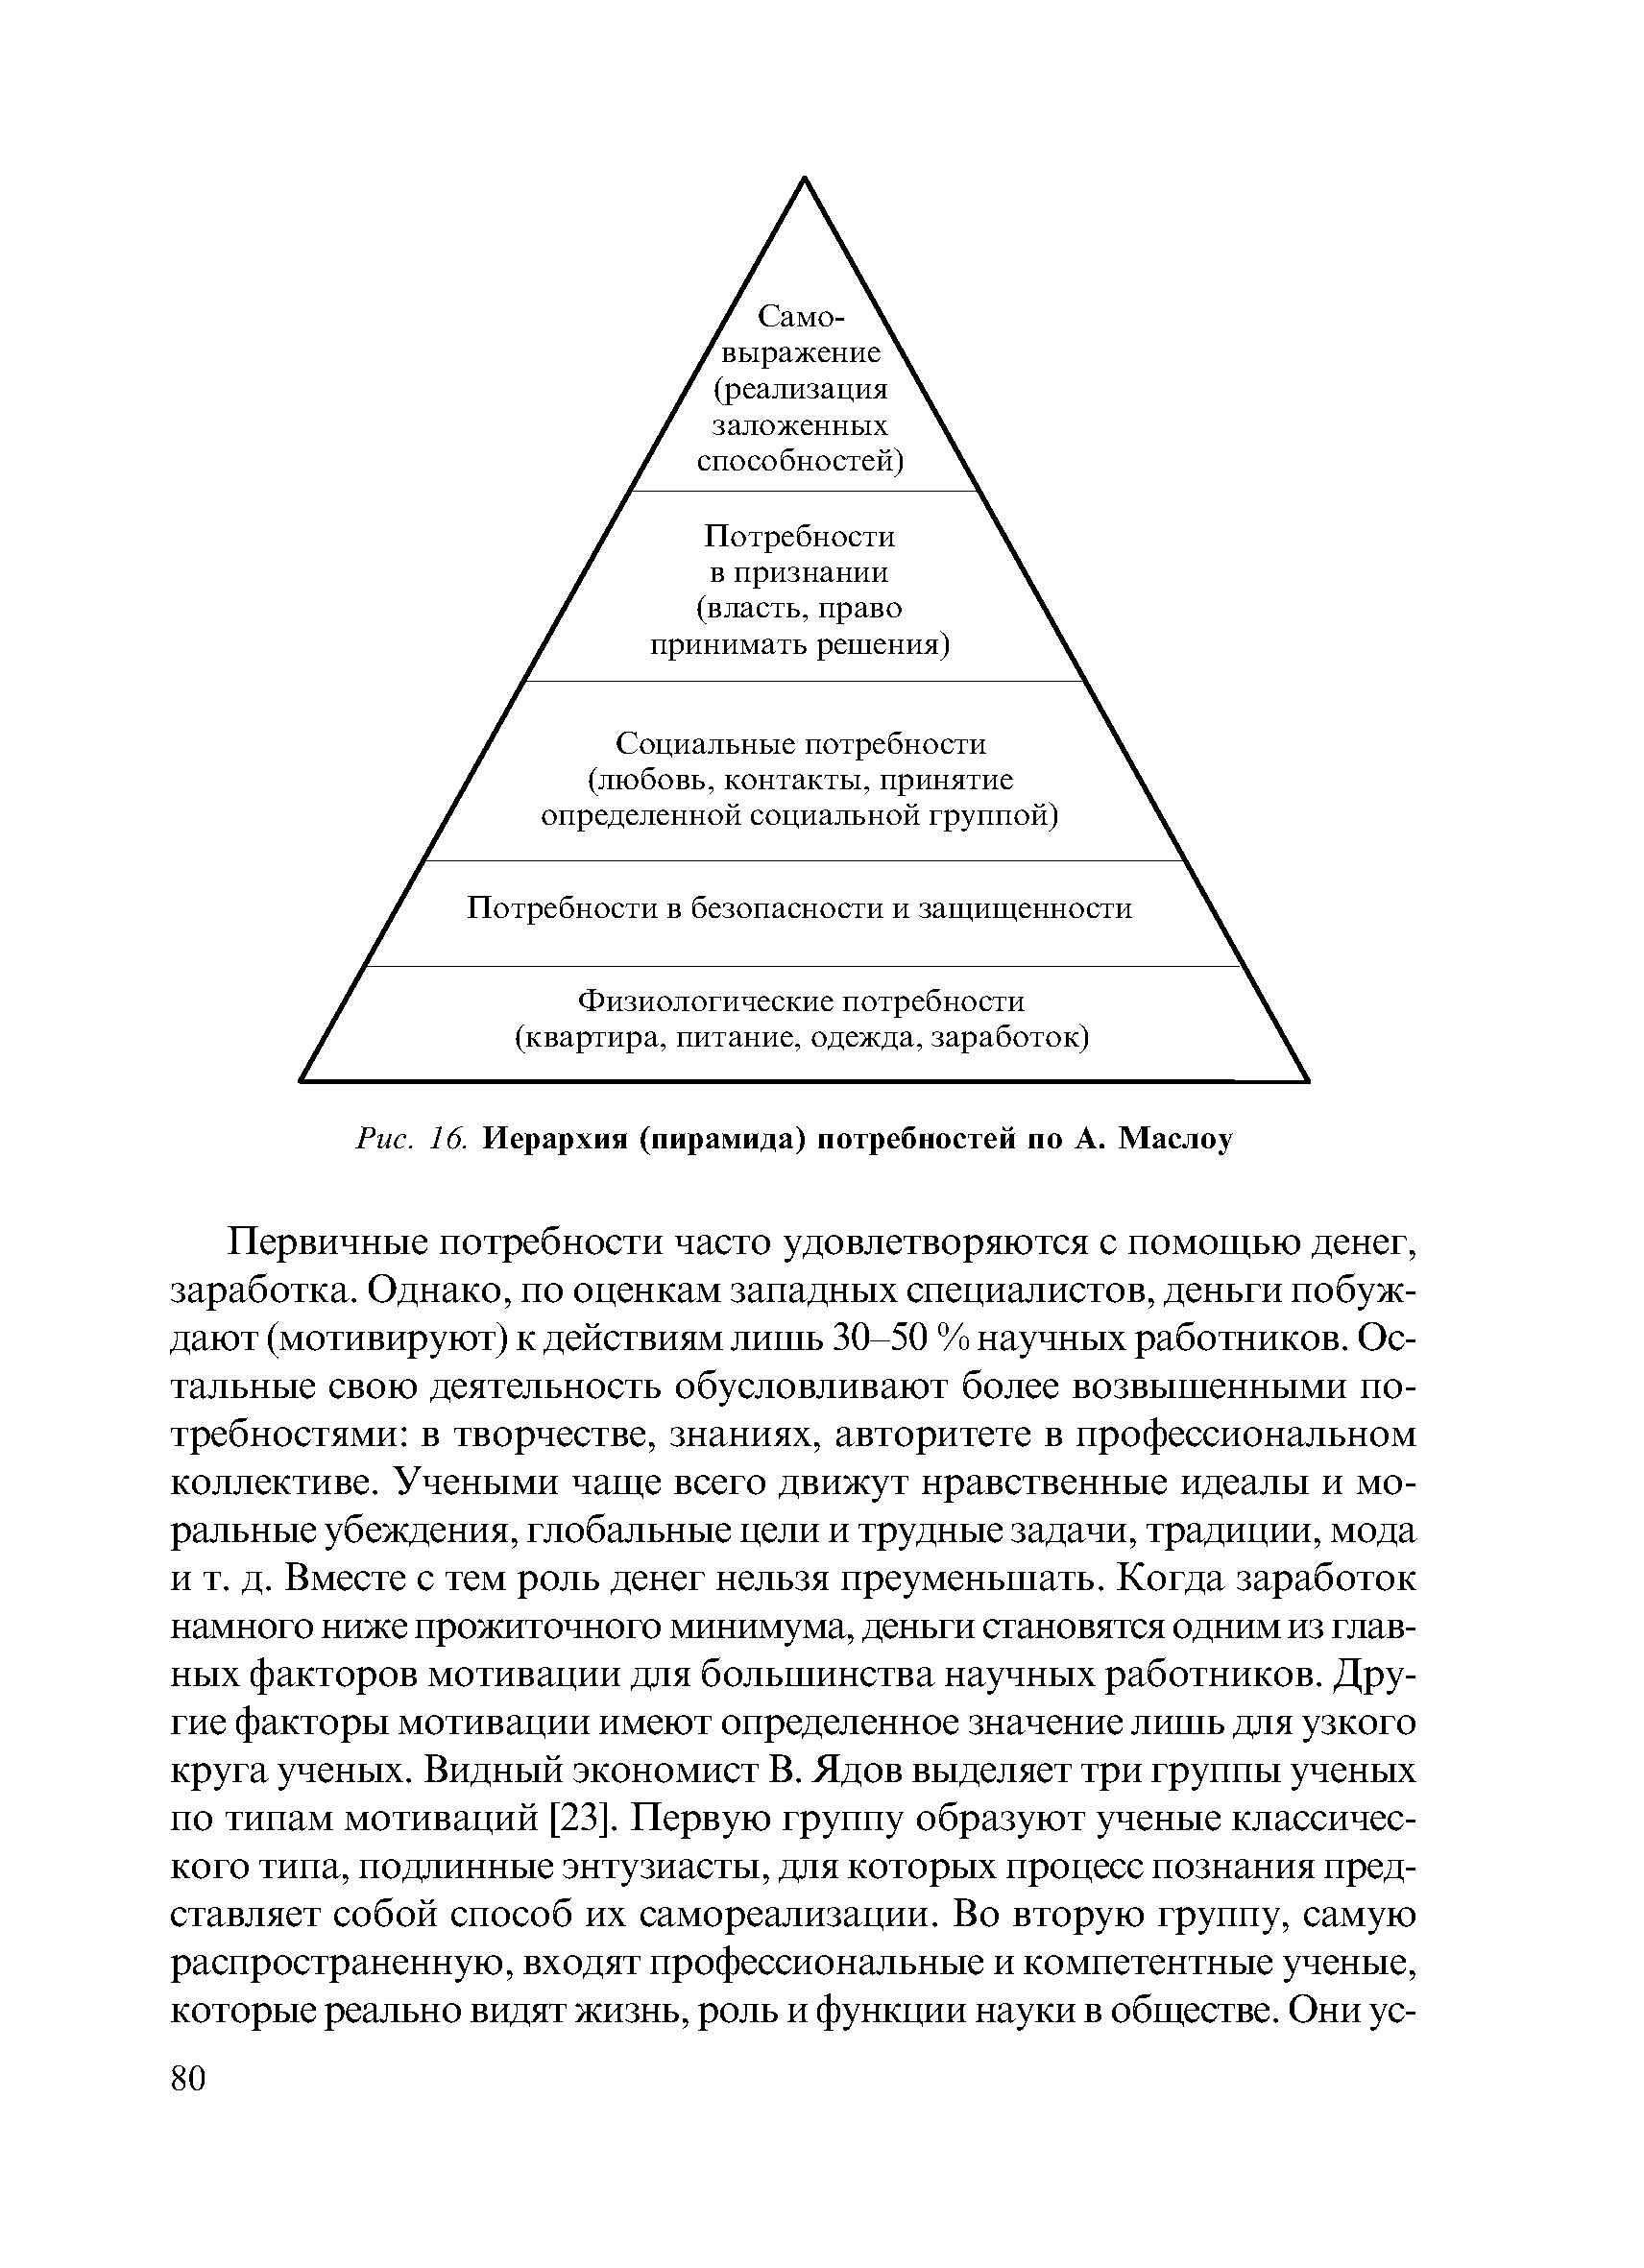 Рис. 16. Иерархия (пирамида) потребностей по А. Маслоу